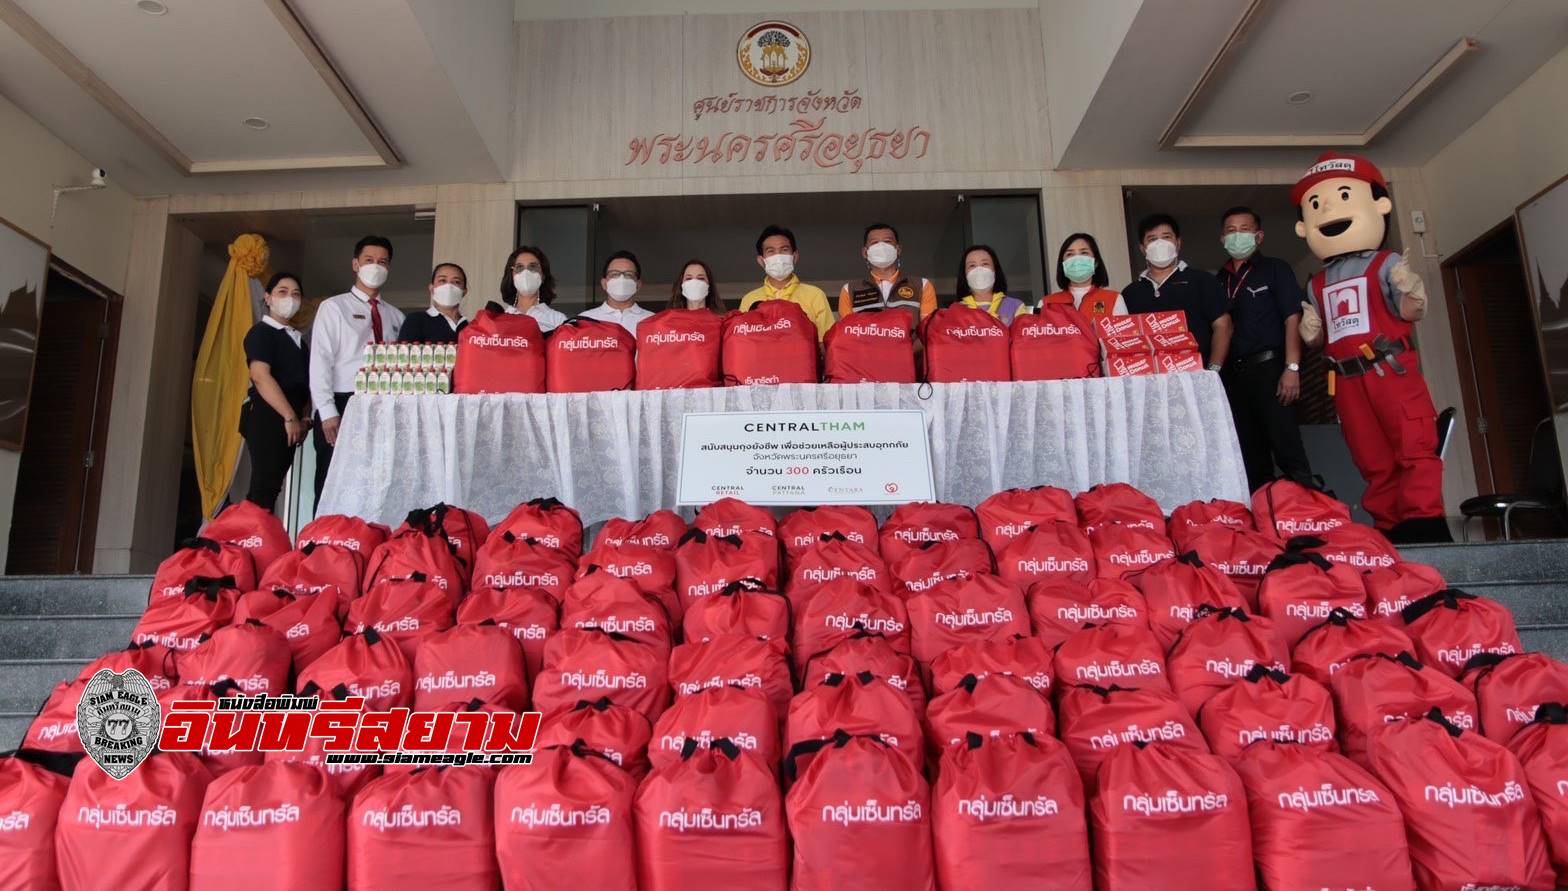 อยุธยา-กลุ่มเซ็นทรัล  ร่วมส่งมอบถุงยังชีพ ช่วยเหลือผู้ประสบอุทกภัย